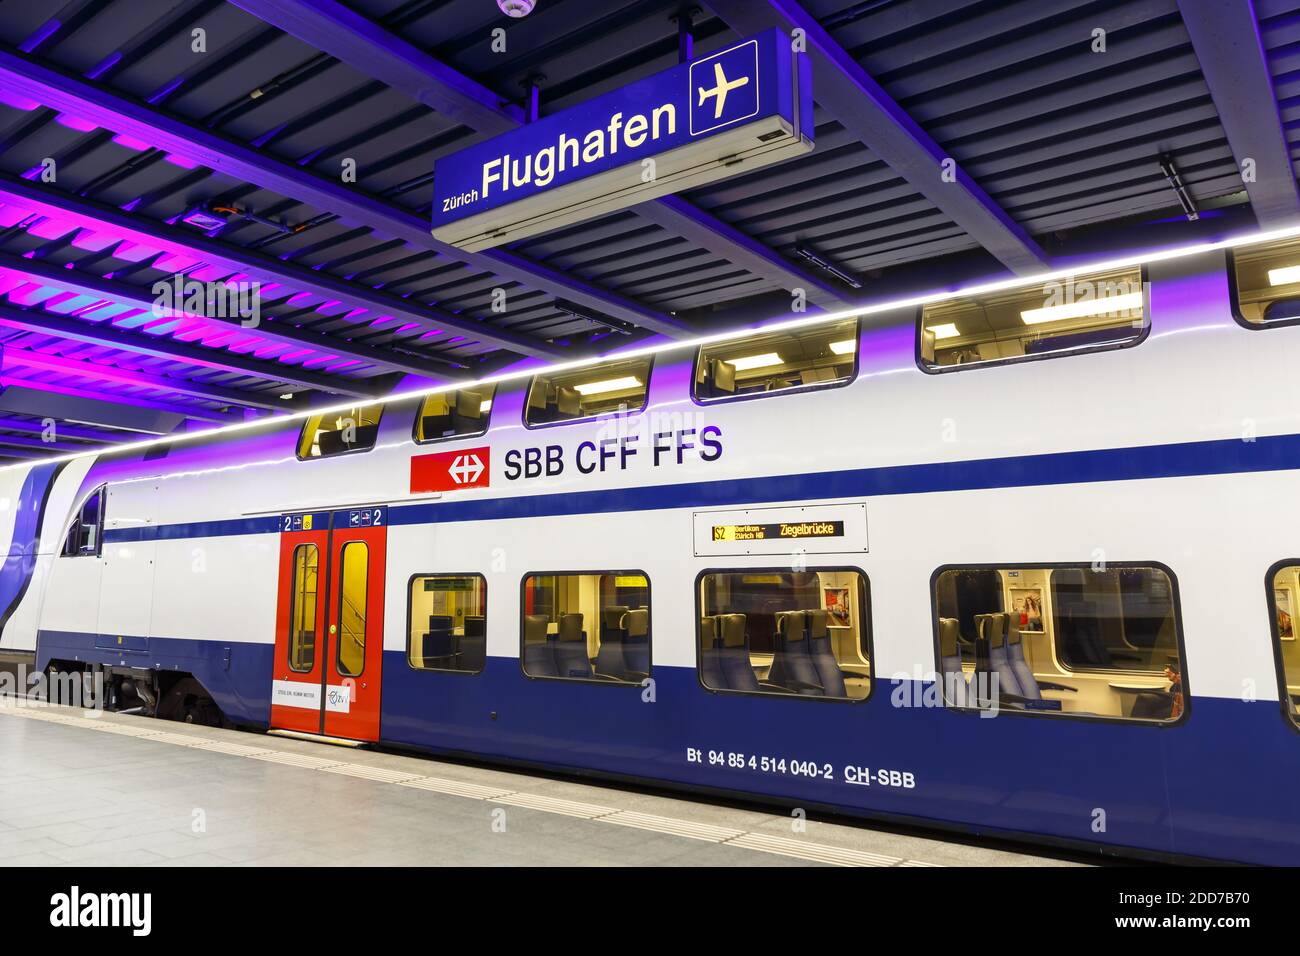 Zurich, Switzerland - September 23, 2020: Siemens Desiro Double Deck S-Bahn train at Zurich Airport railway station in Switzerland. Stock Photo